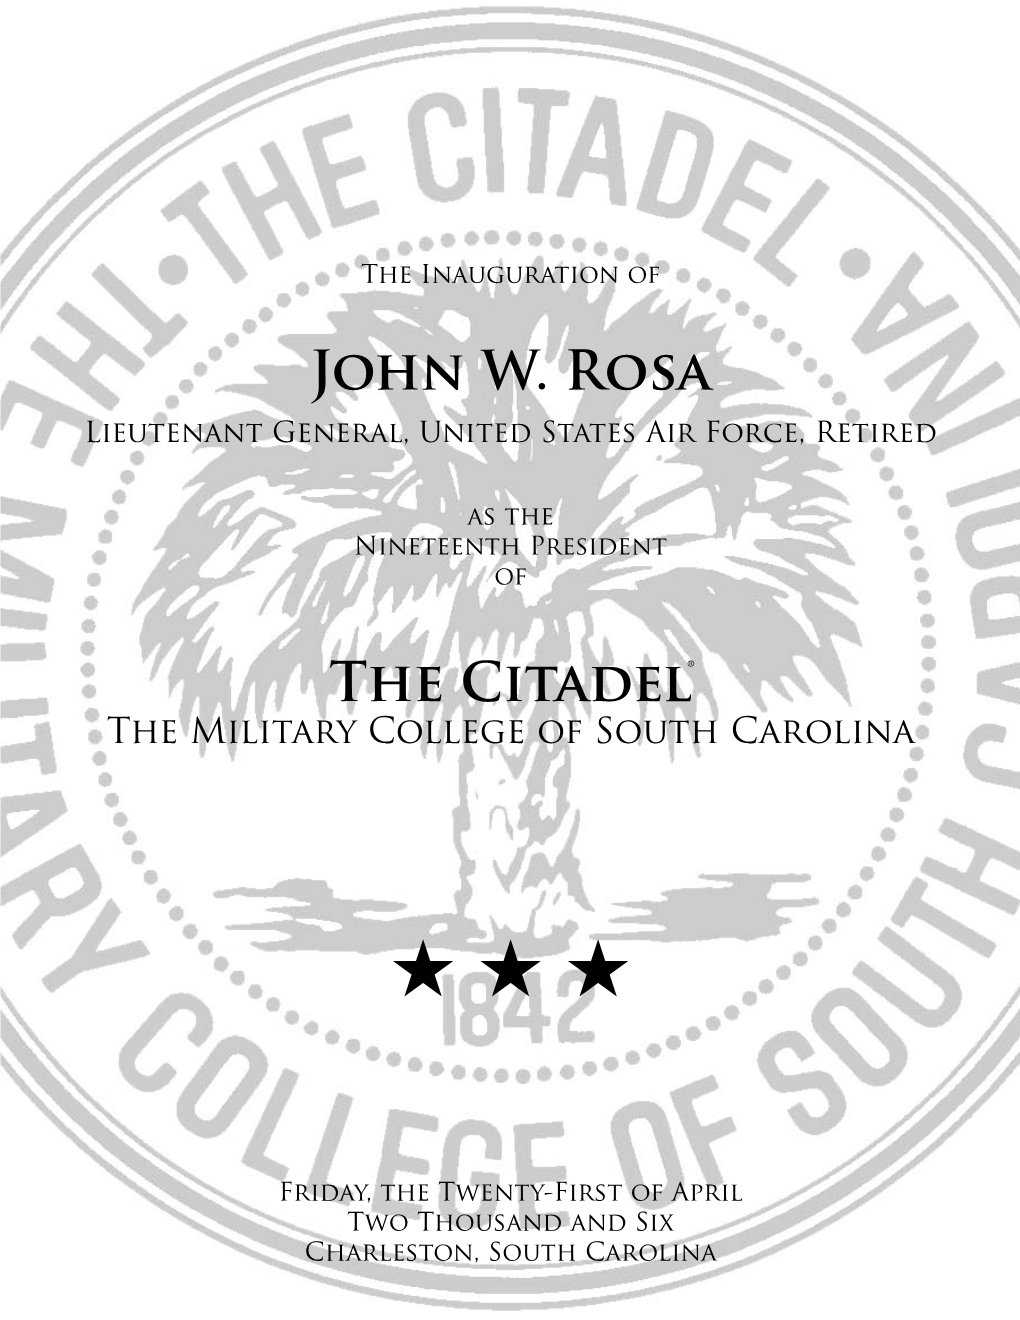 John W. Rosa the Citadel